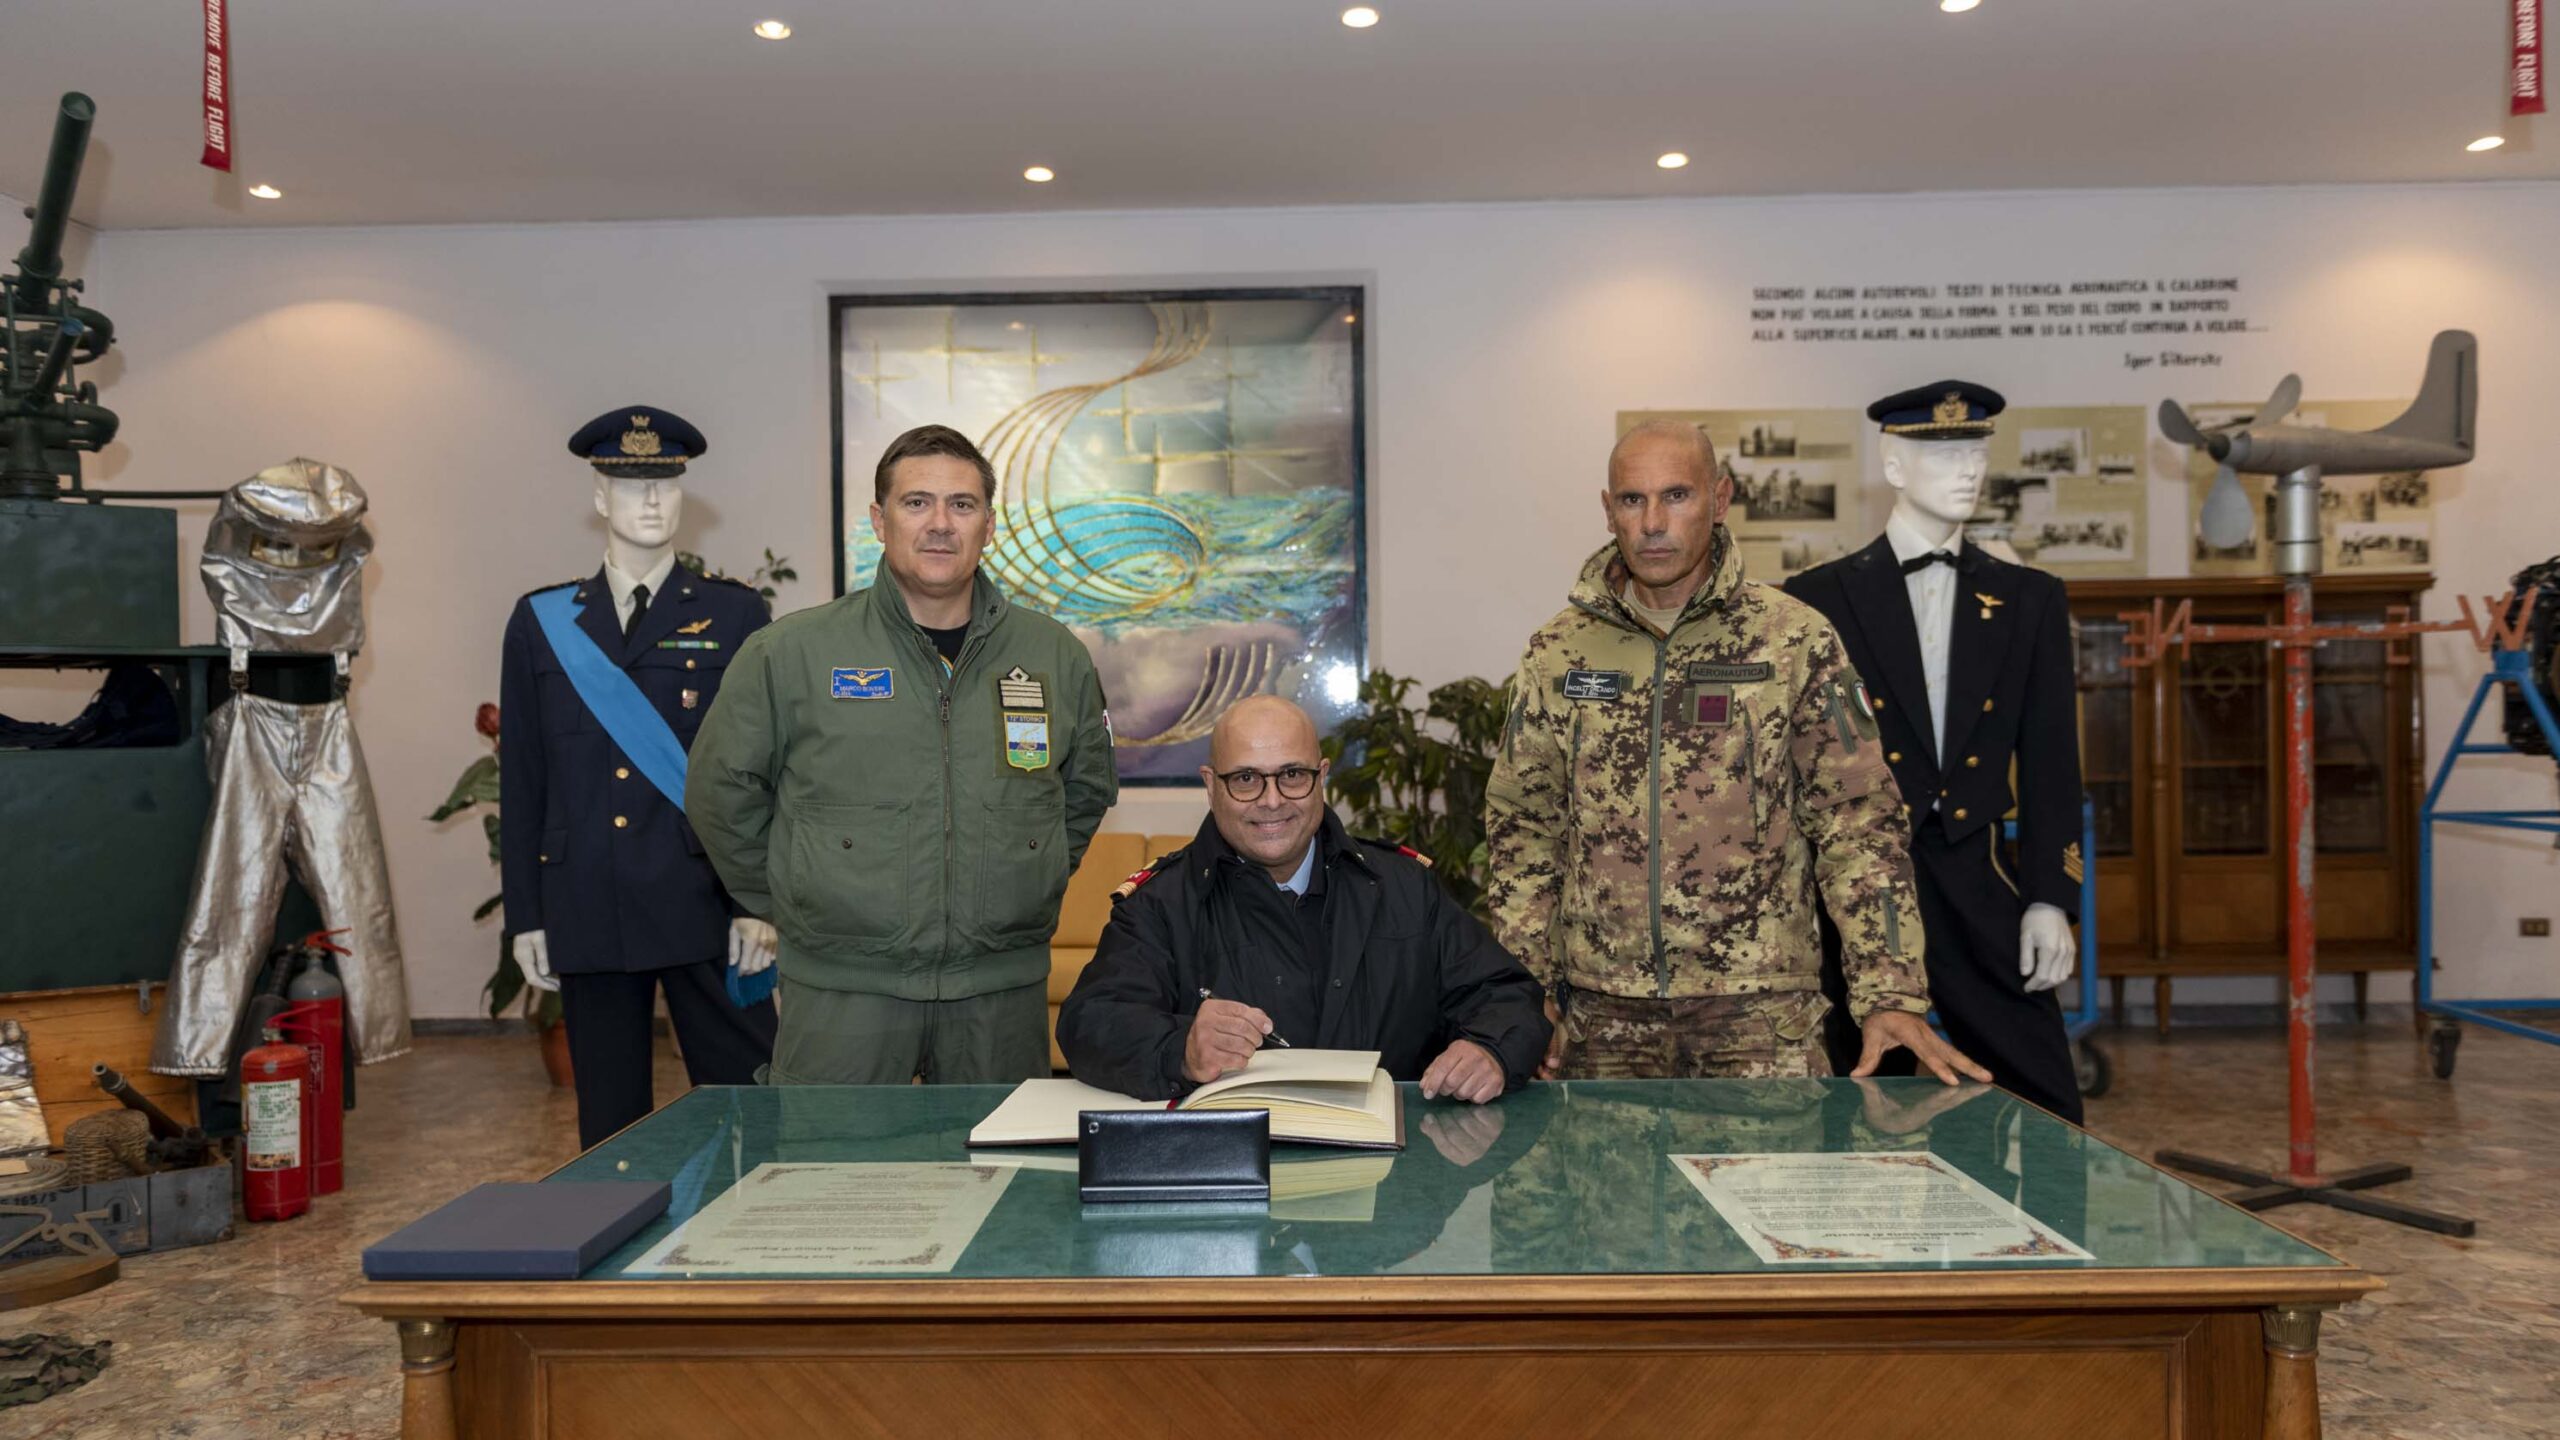 Le président-chef des sous-officiers, des diplômés et des troupes militaires de l'armée de l'air visitant le 72e Stormo de Frosinone